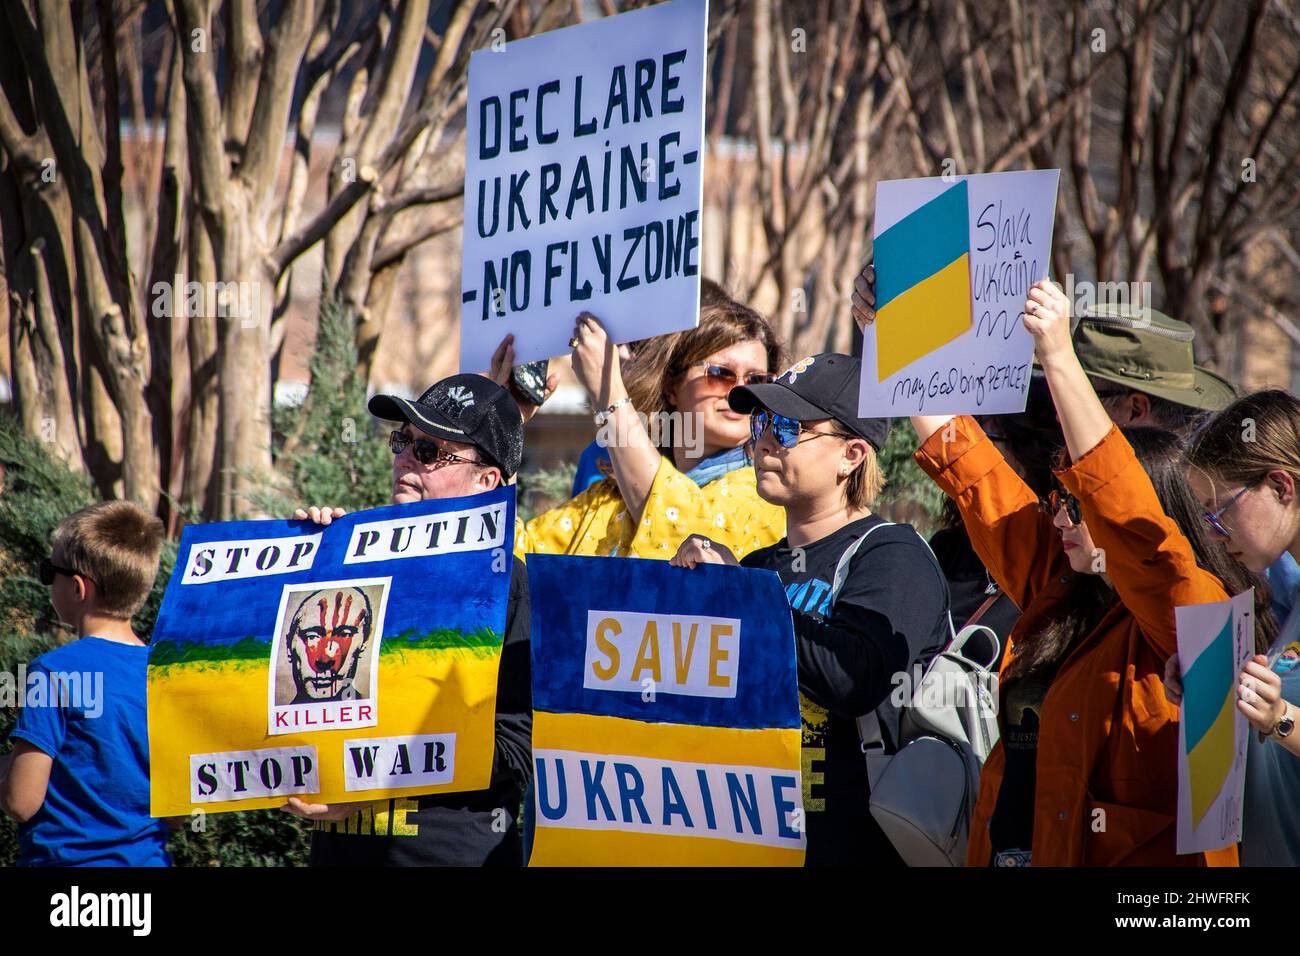 2022 03 05 Tulsa OK USA Support Ucraina Rally con molti segni in blu e giallo - Putins faccia con Killer - Salva Ucraina - No Fly zone e altri Foto Stock